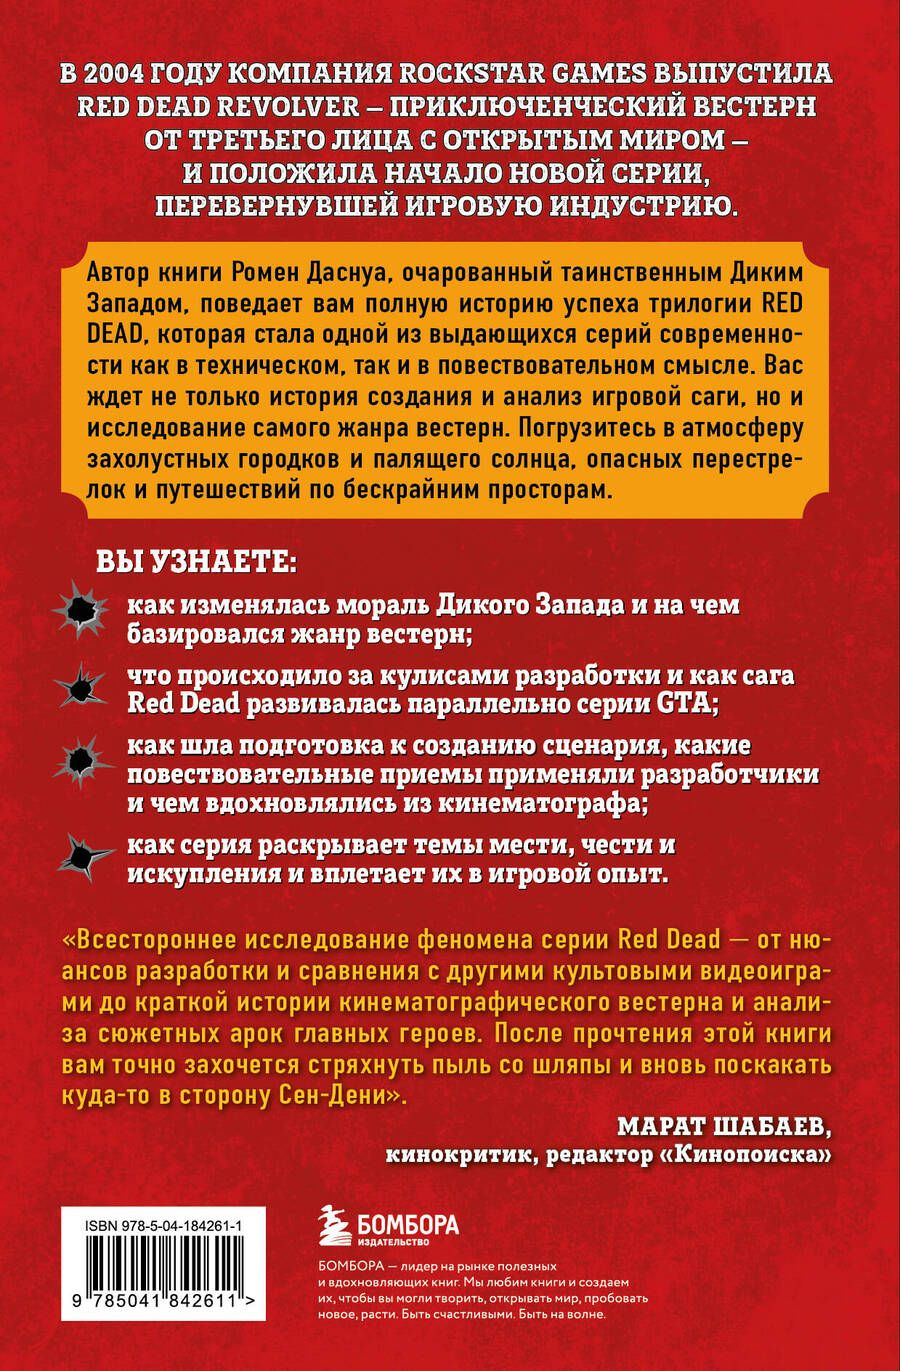 Обложка книги "Ромен Даснуа: Red Dead Redemption. Хорошая, плохая, культовая: рождение вестерна от Rockstar Games"